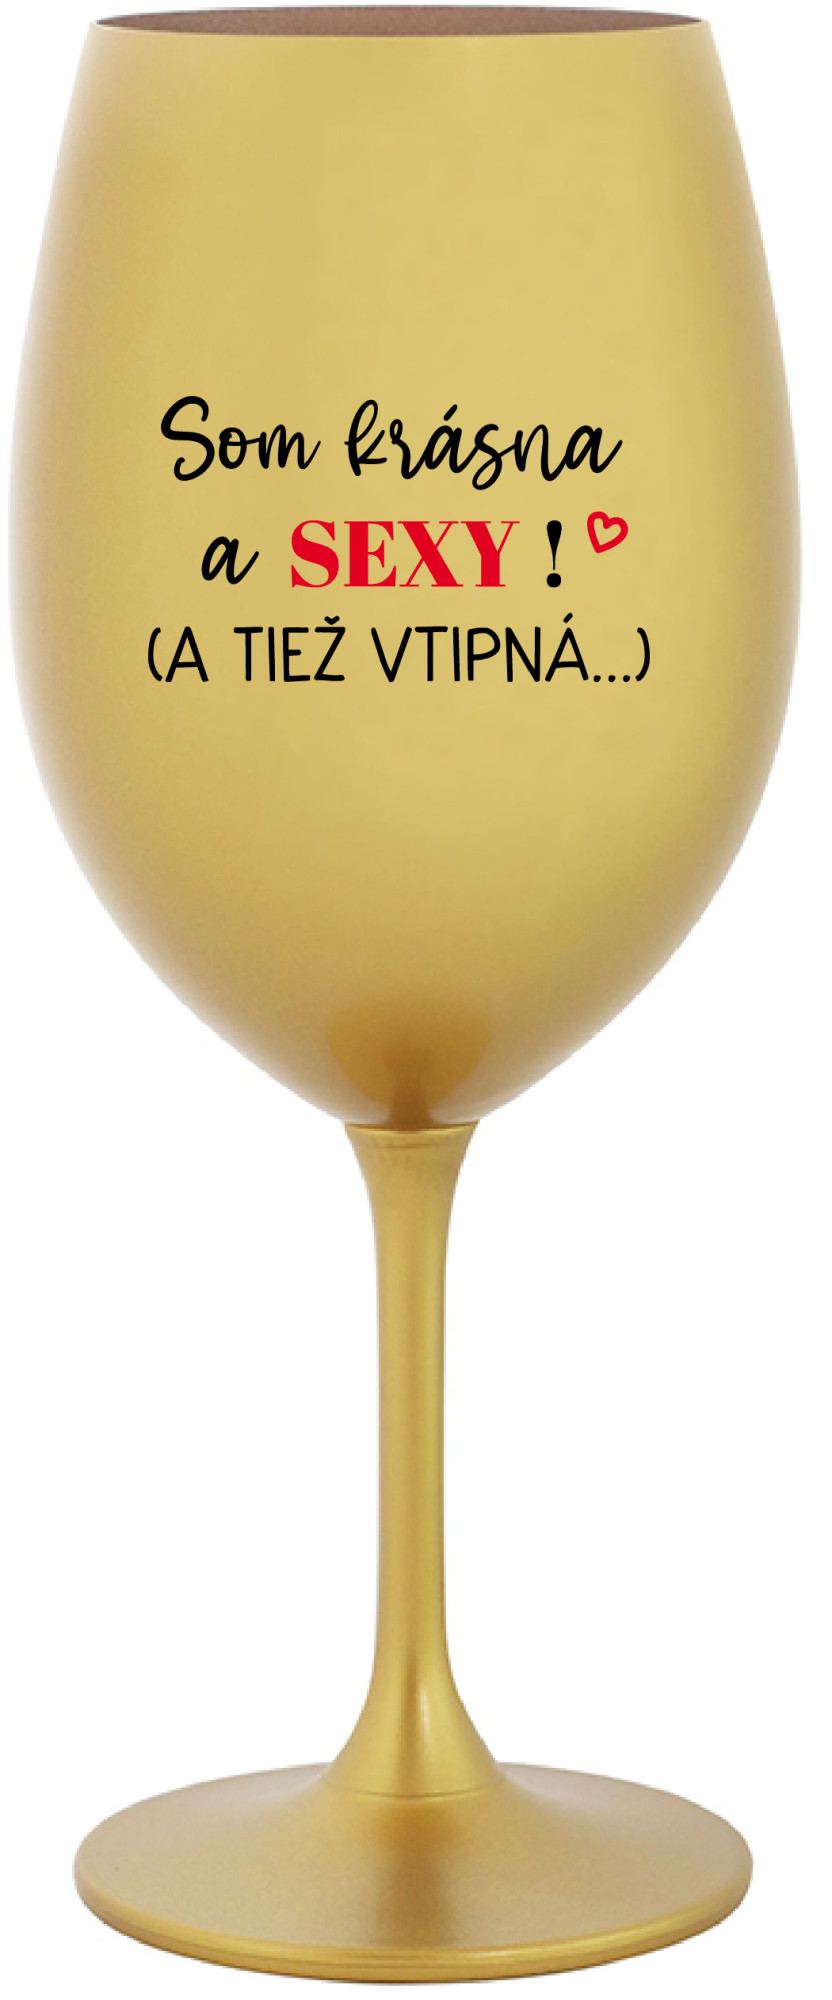 SOM KRÁSNA A SEXY! (A TIEŽ VTIPNÁ...) - zlatá sklenice na víno 350 ml